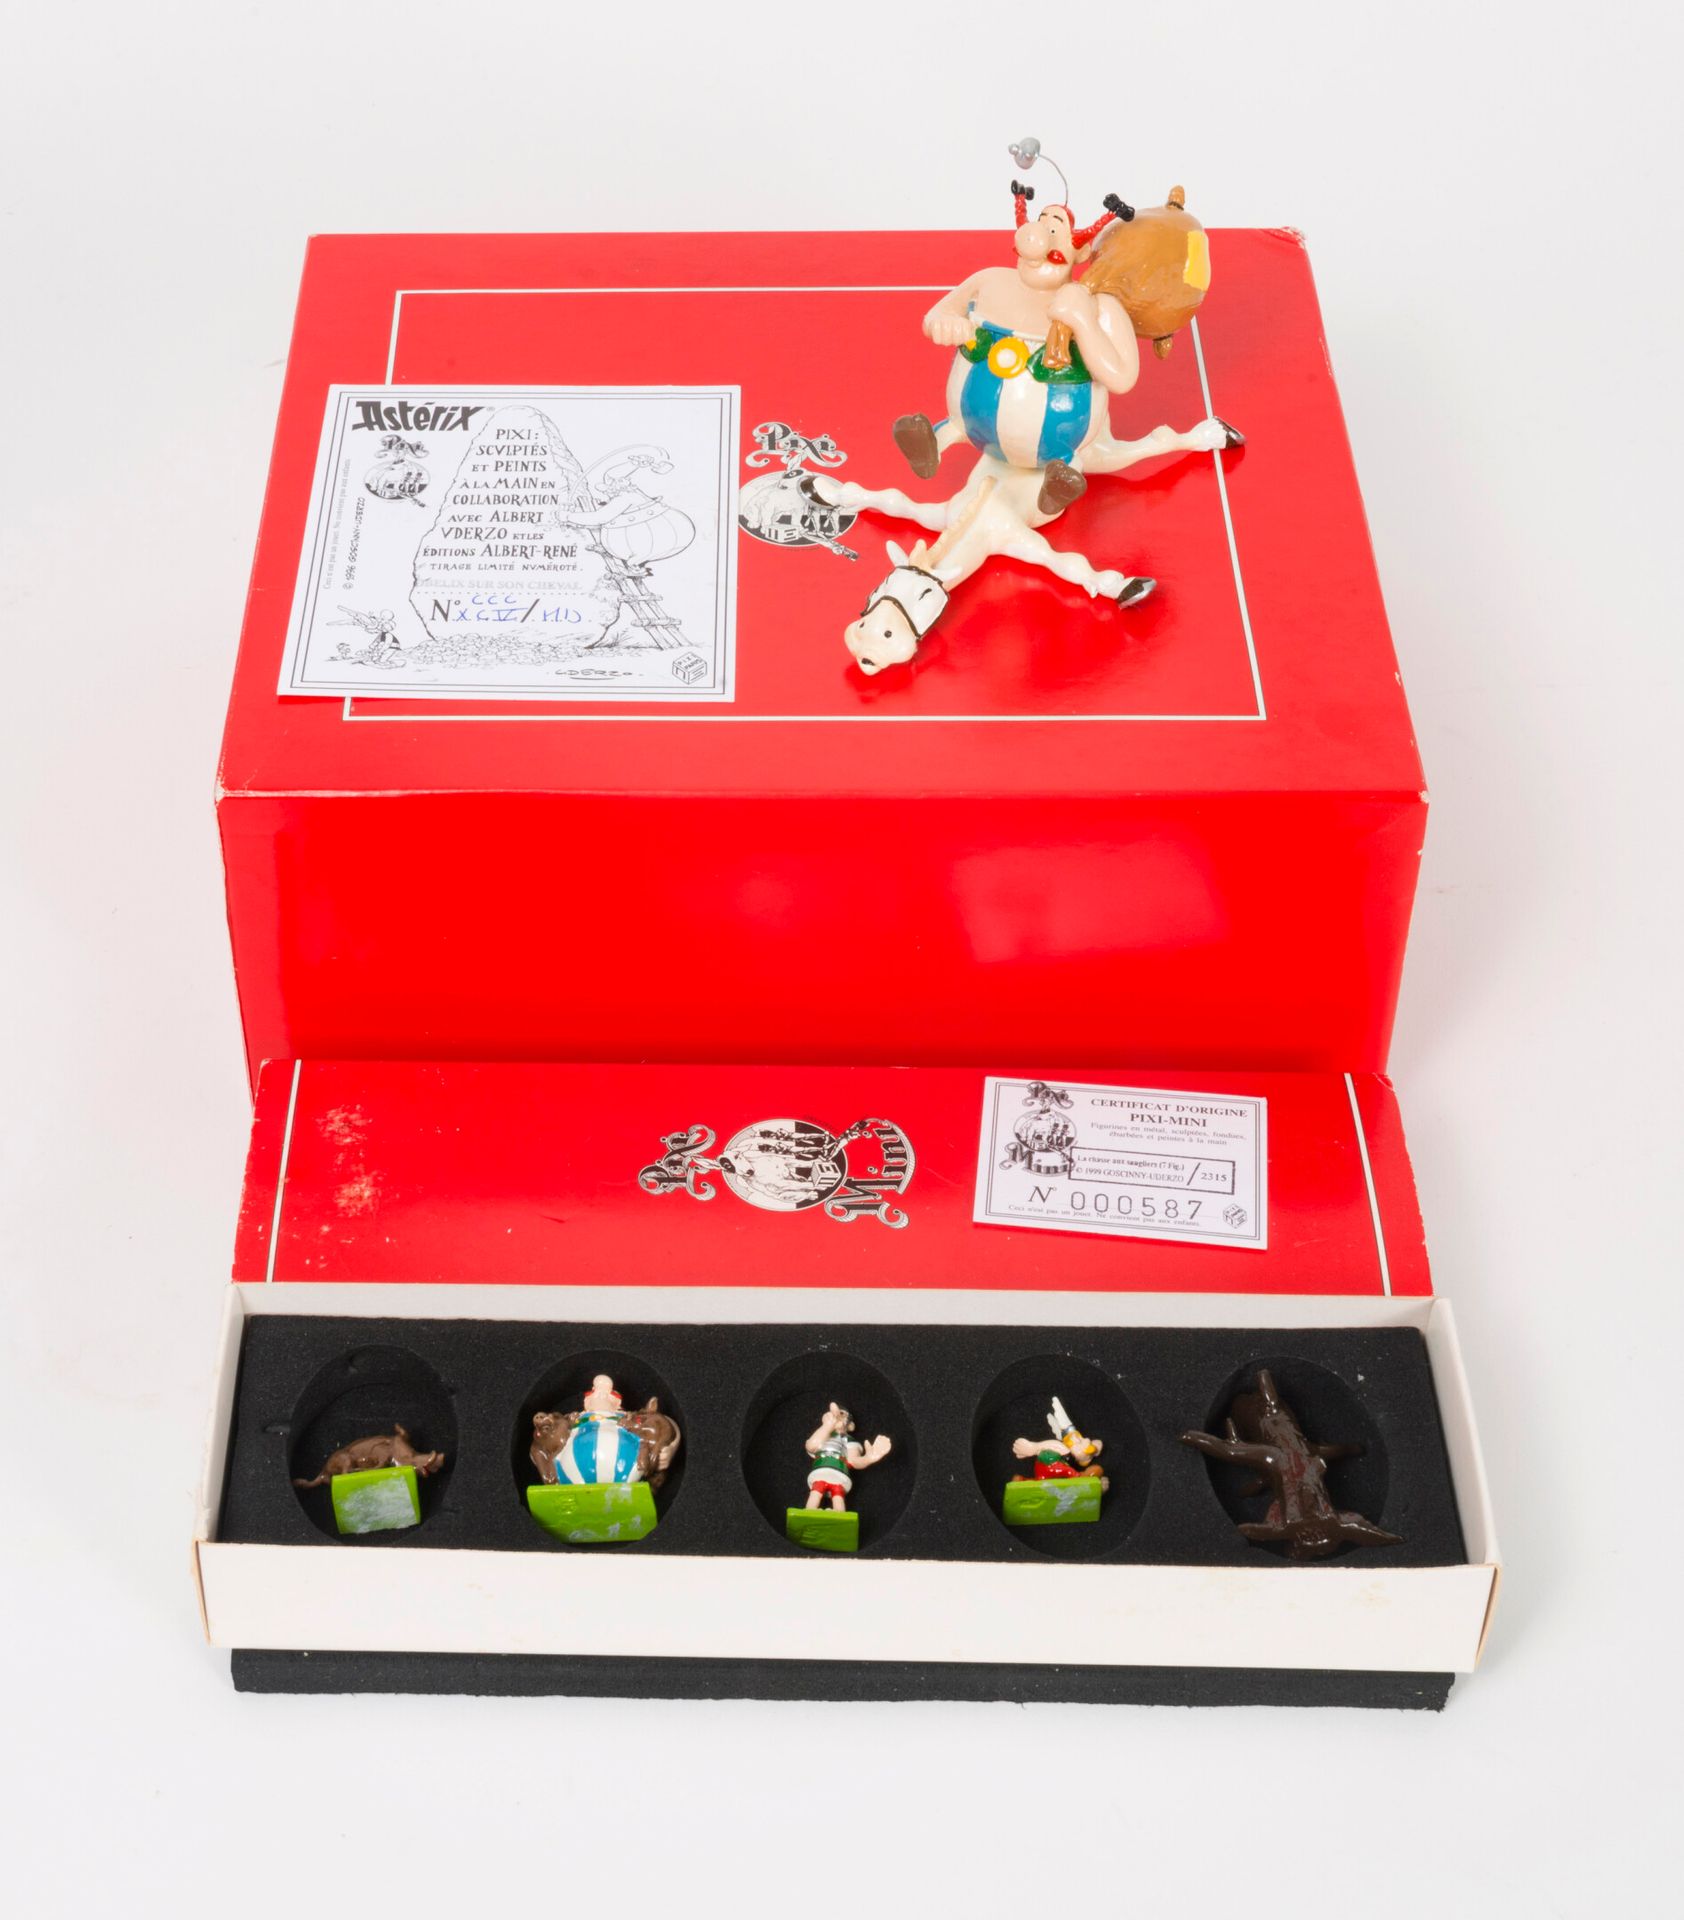 Pixi, Paris 奥贝利克斯在他的马上，1996-98。

Asterix，Uderzo收藏。

限量发行750册。

7,5 x 10 x 7,5厘米。&hellip;